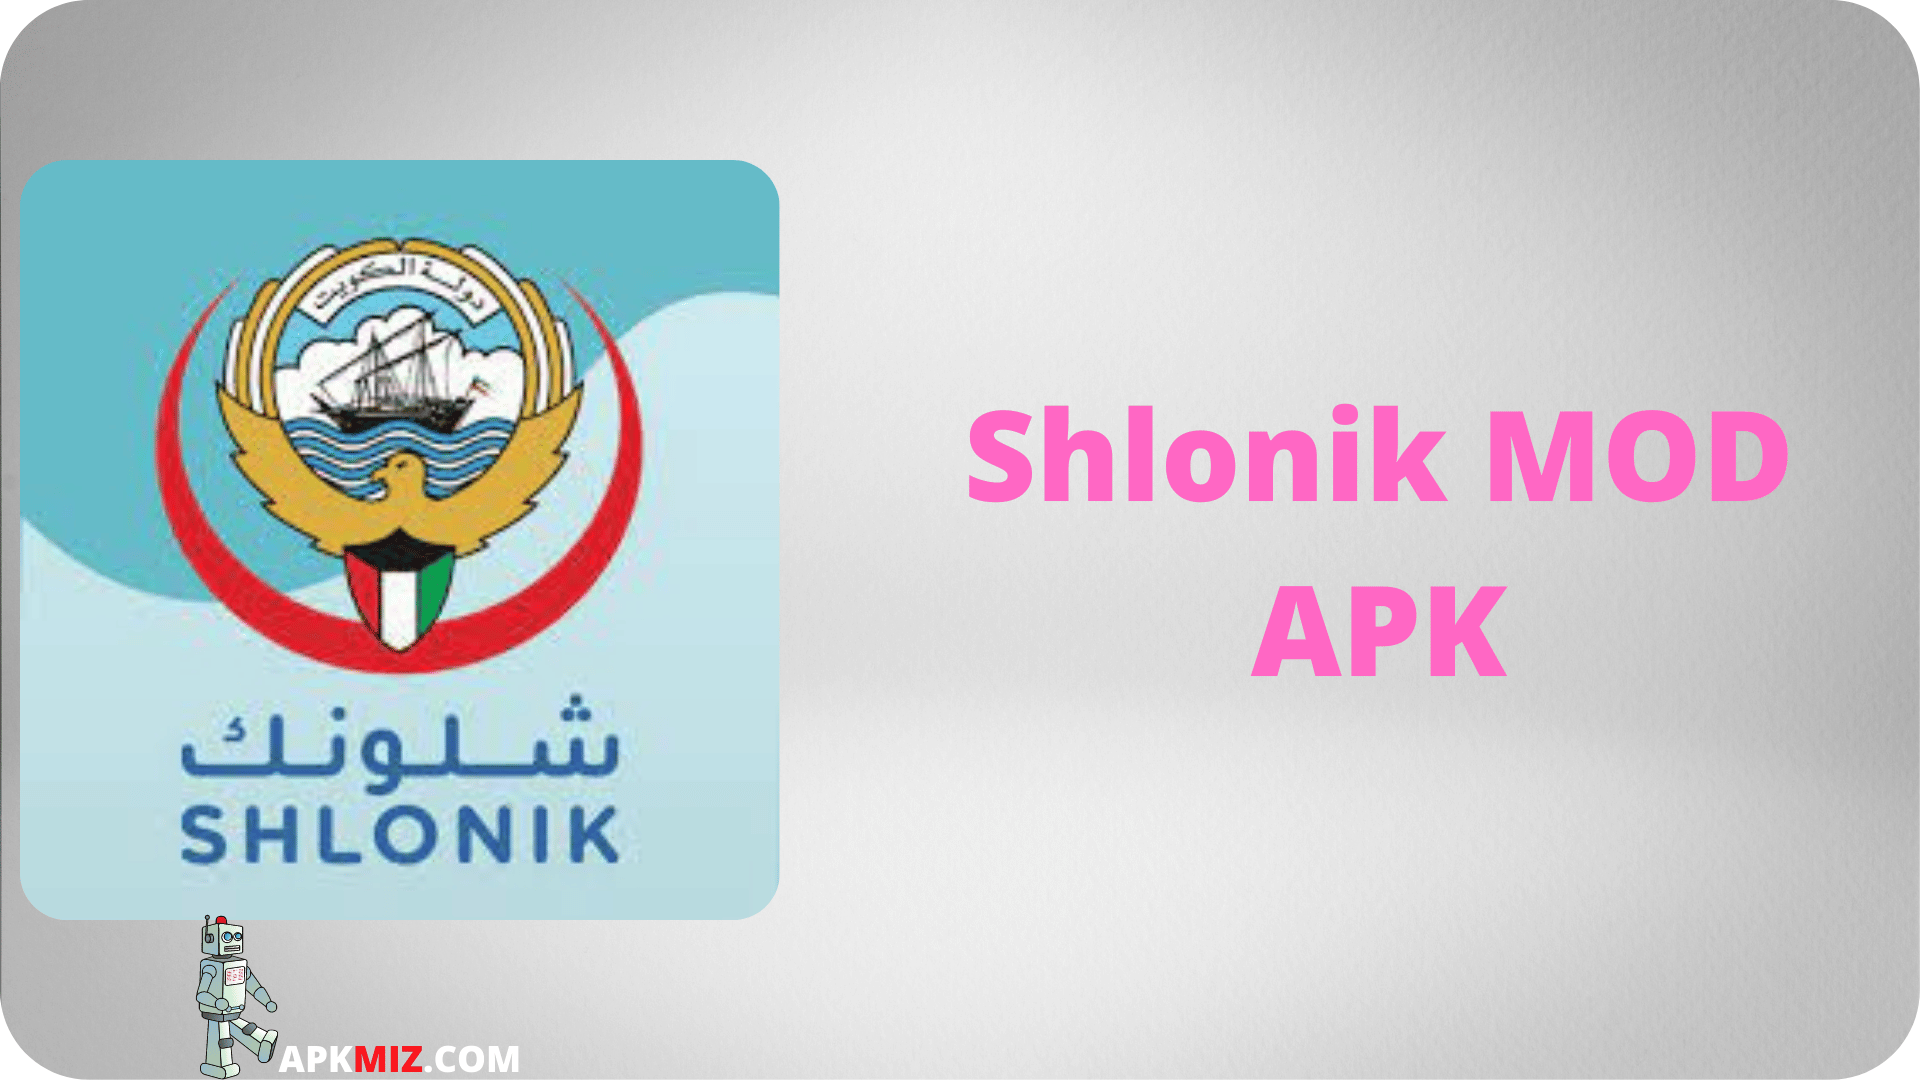 Shlonik MOD APK